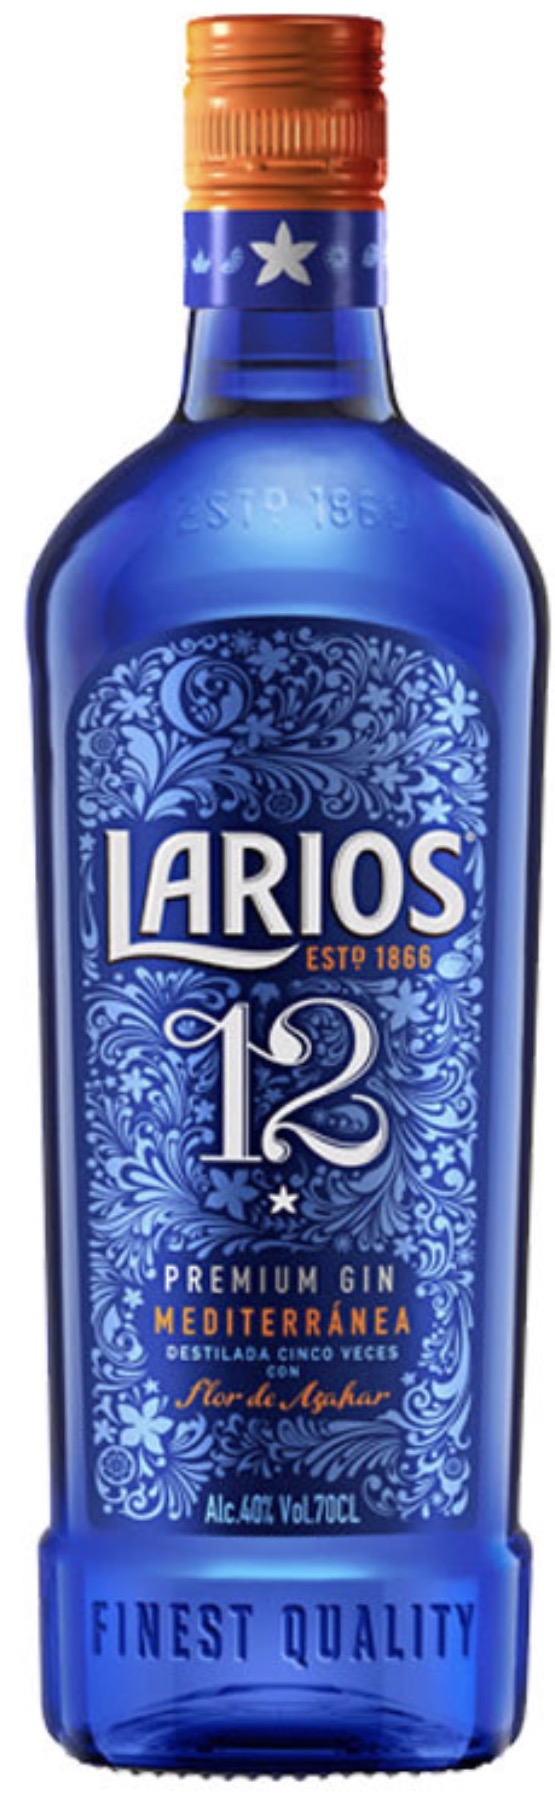 Larios 12 Mediterranea Premium Gin 40 % vol. 0,7L